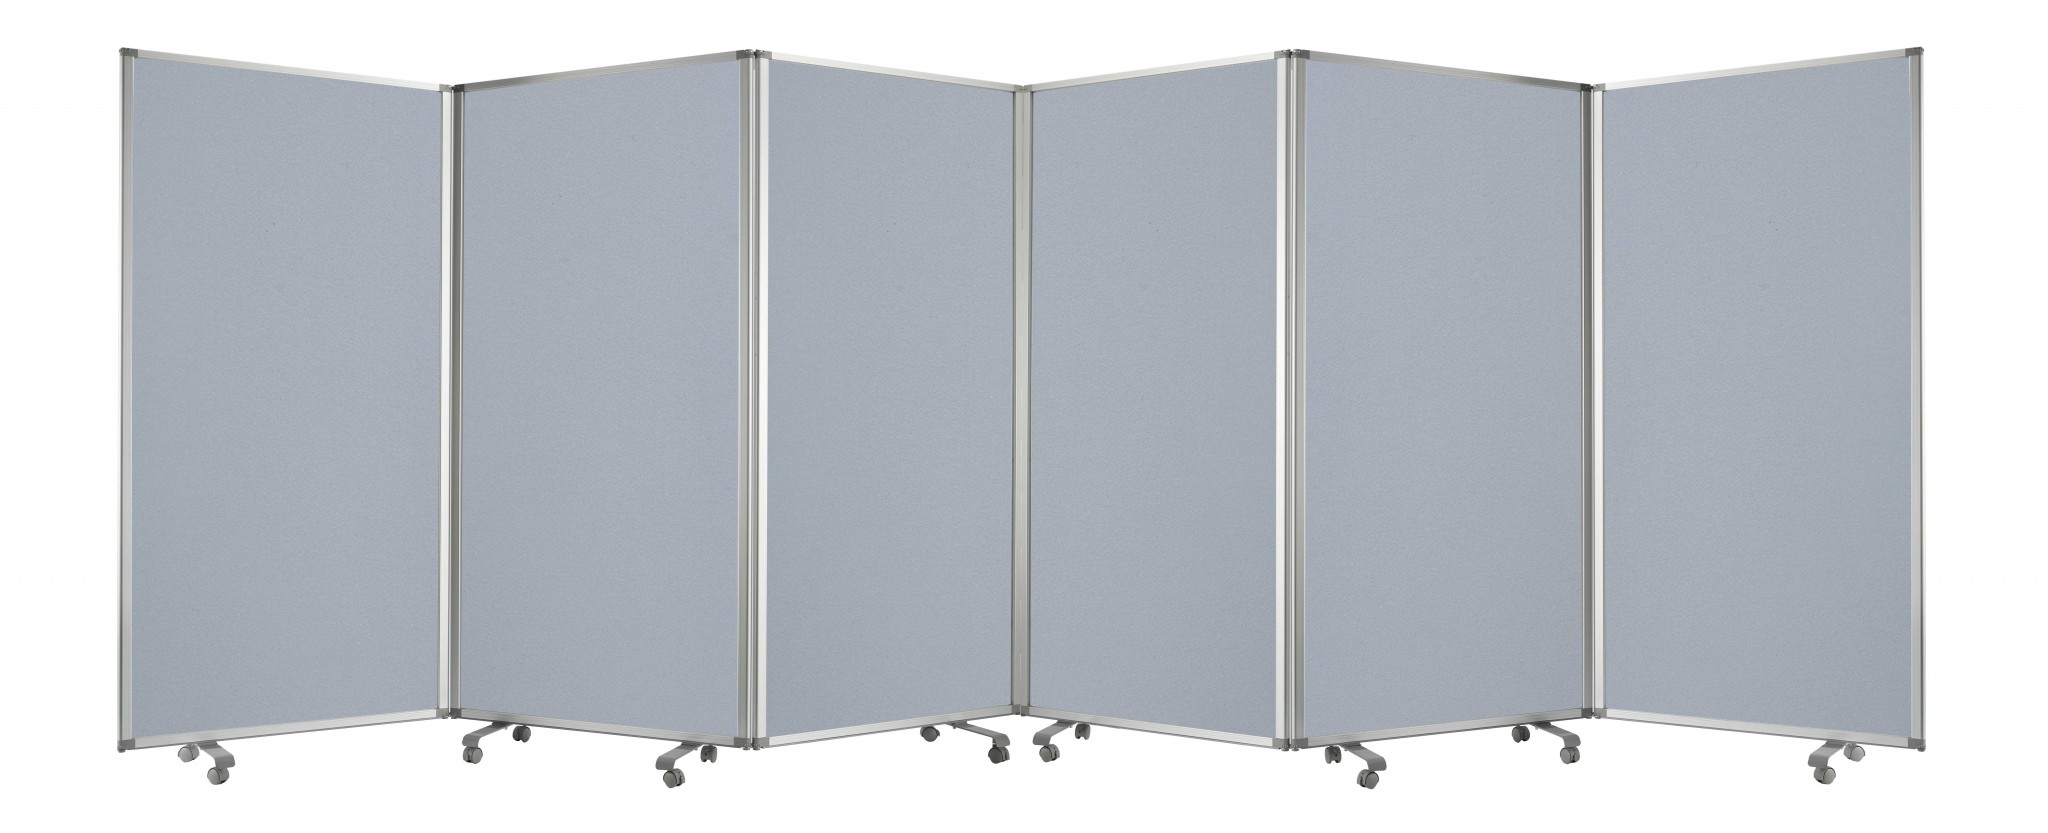 212" x 1" x 71" Metal, Grey, 6 Panel, Screen